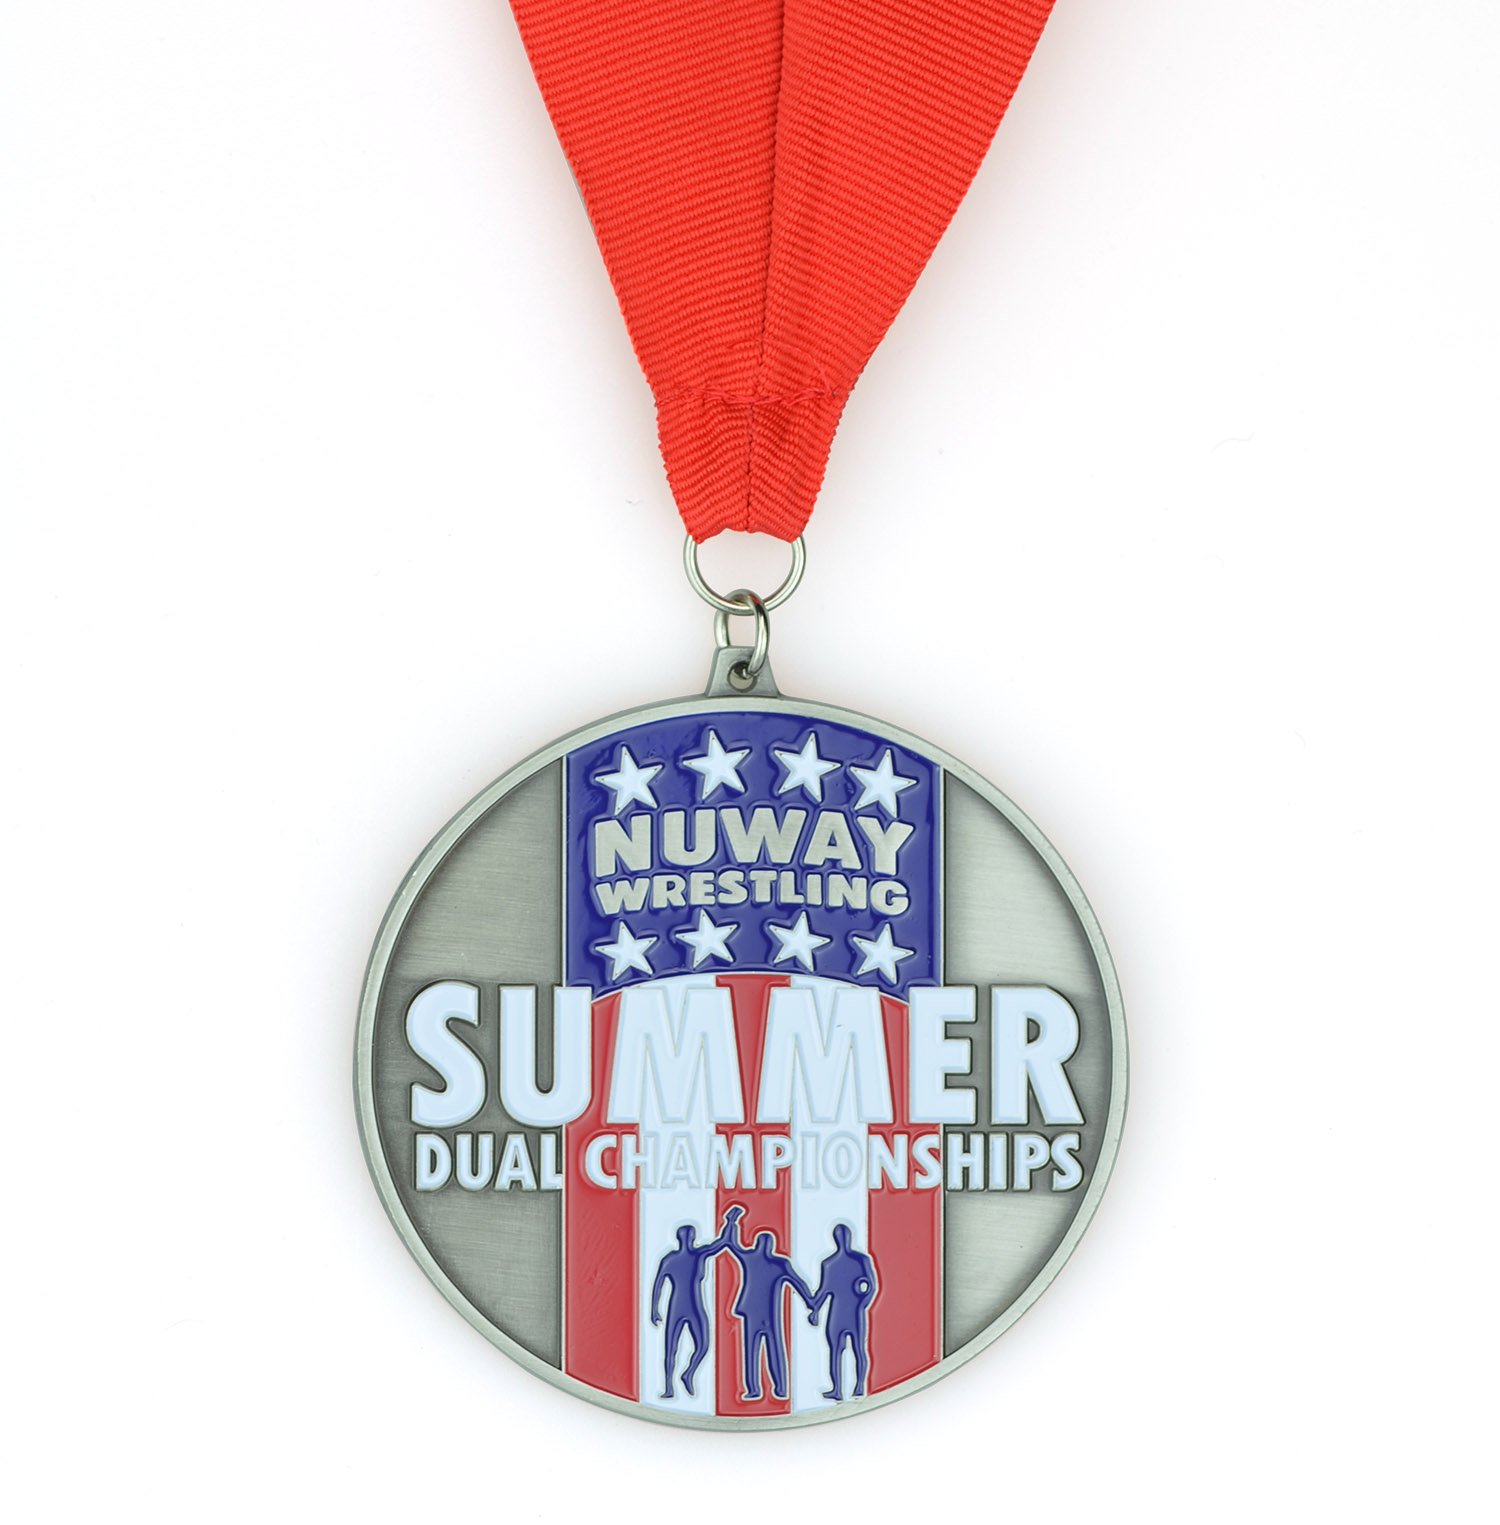 Hoë kwaliteit aandenkings sinklegering Pasgemaakte logo Metaal Somer Dubbele Kampioenskappe Stoei Judo Taekwondo Karate Marathon Hardloop Sport Medalje (3)